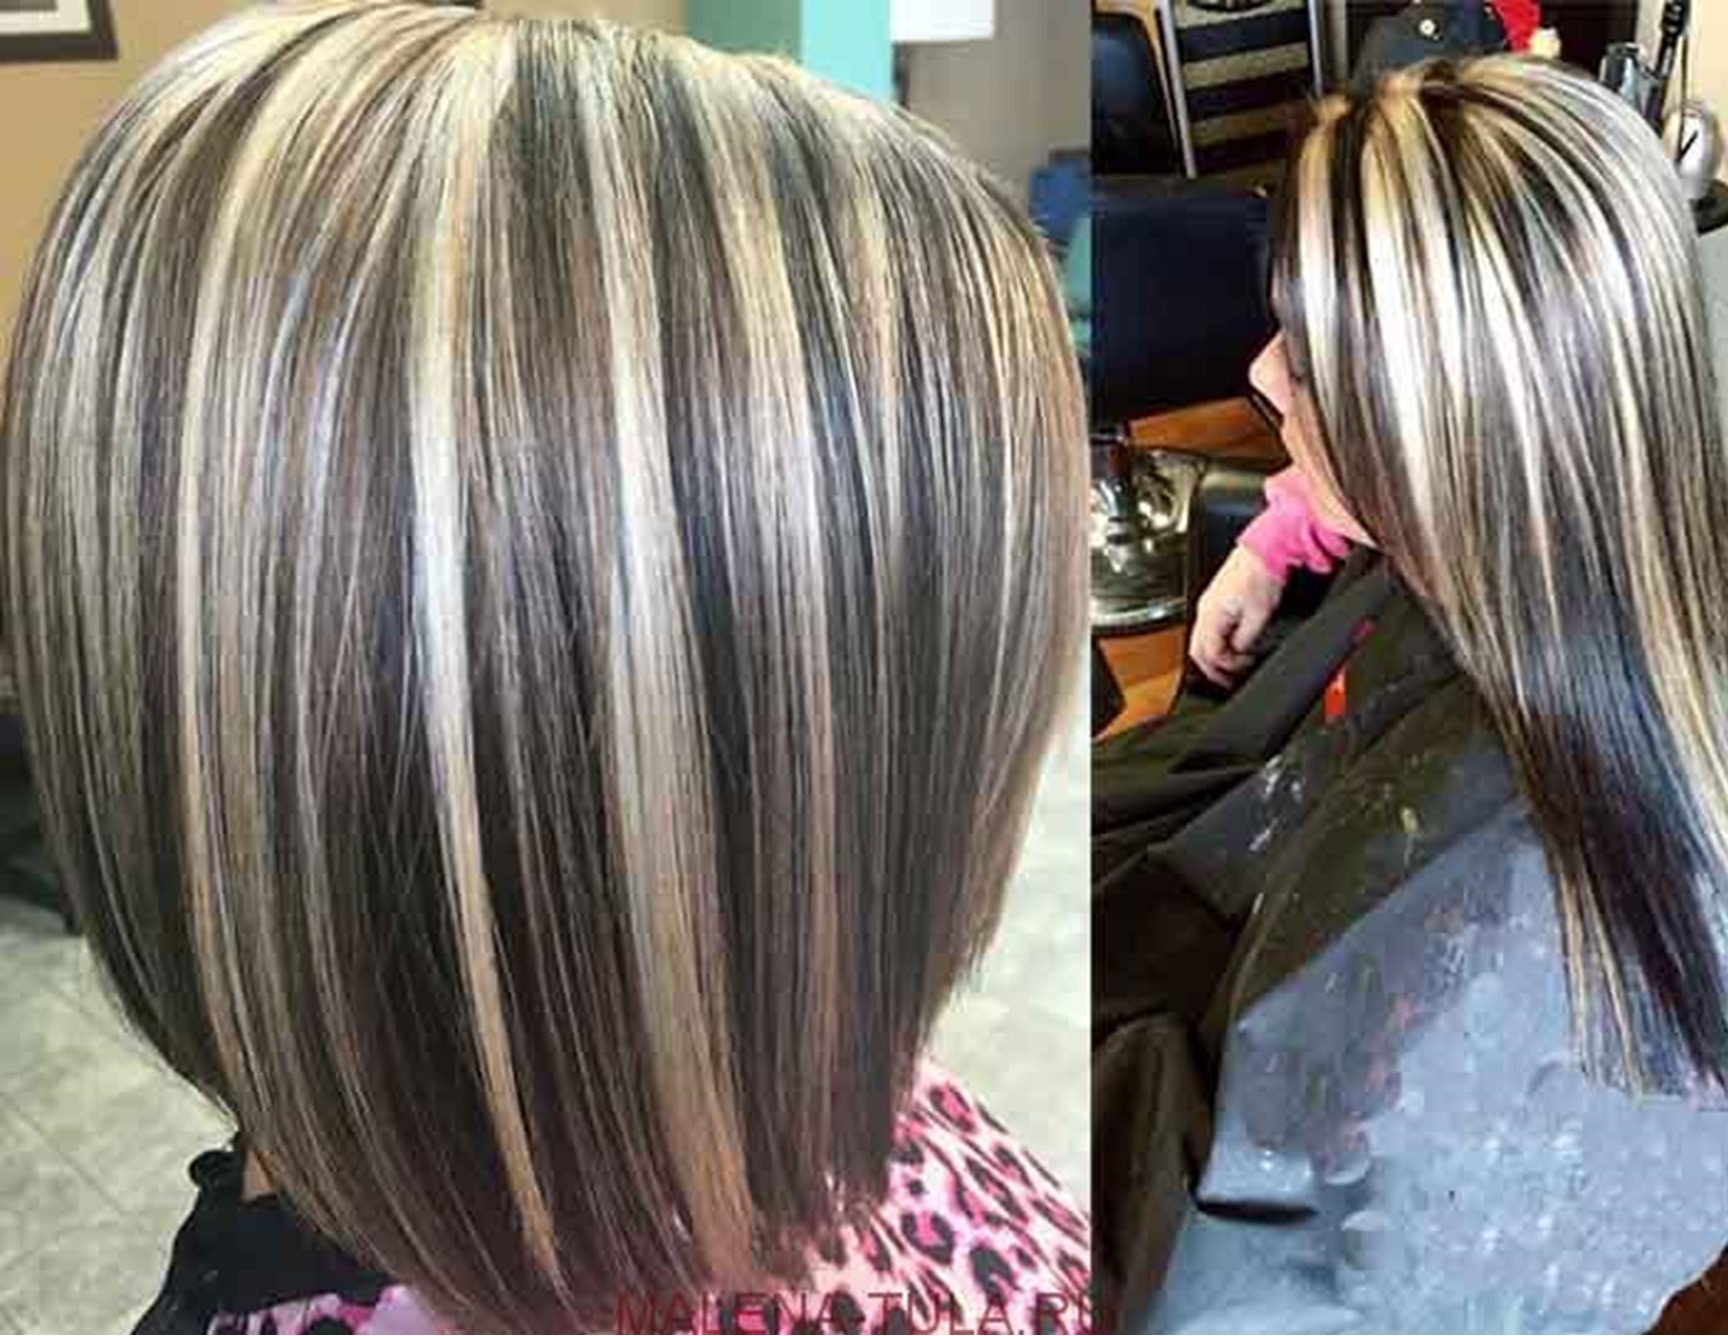 Редкое мелирование на русые волосы каре фото до и после